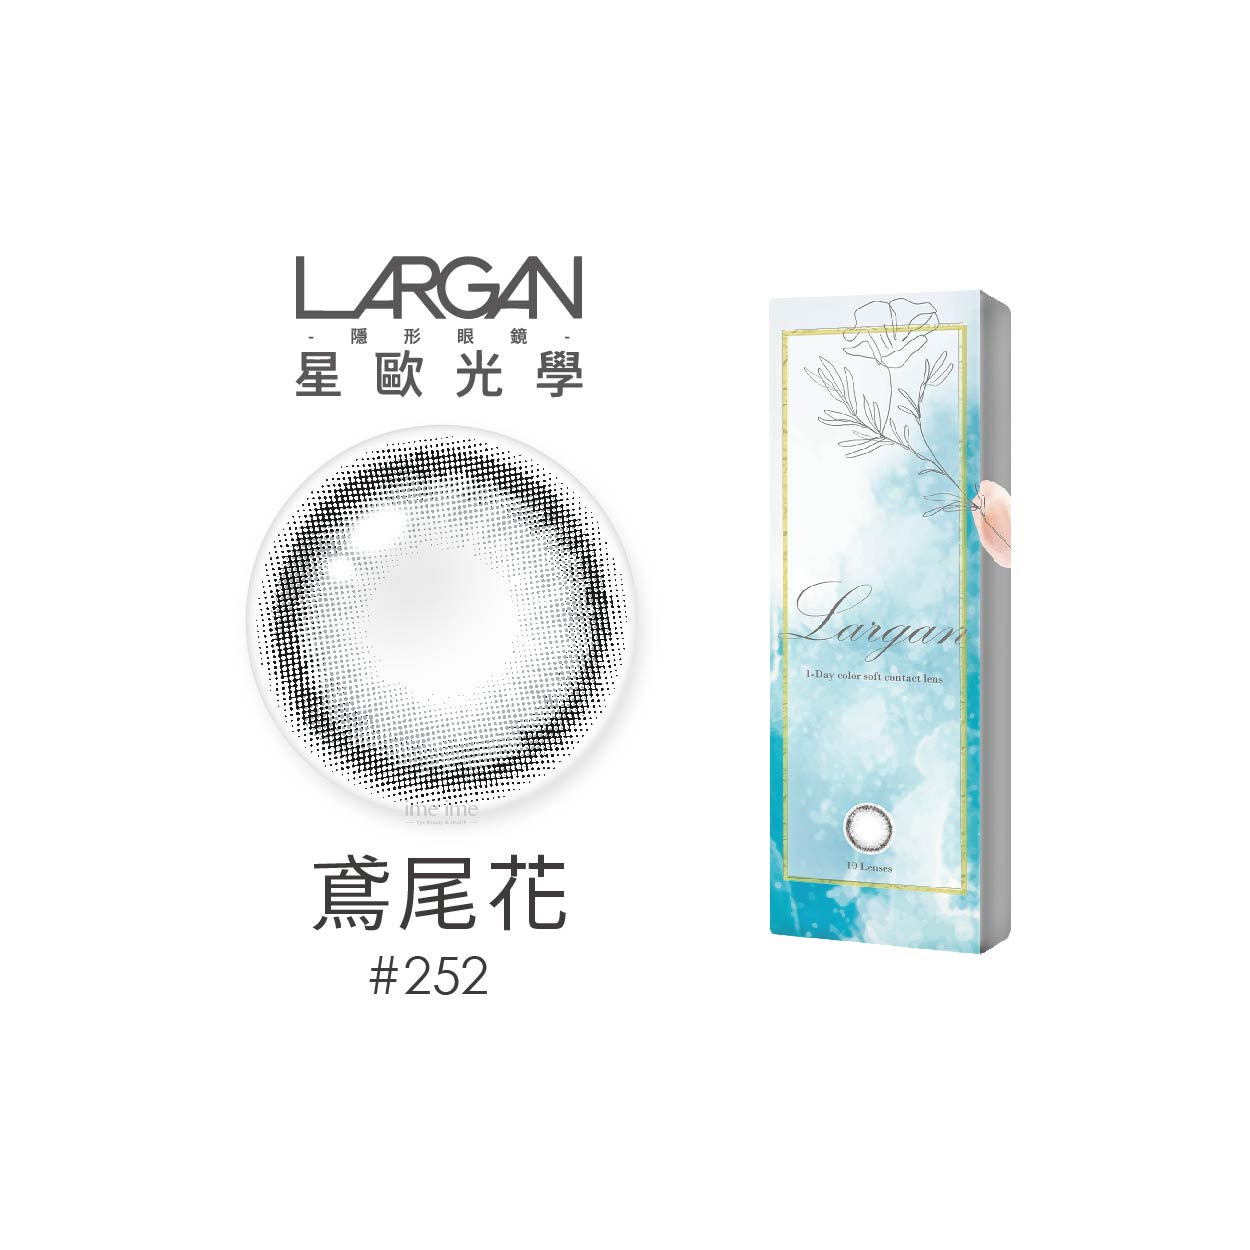 LARGAN星歐香氛系列彩色日拋10片裝-鳶尾花灰